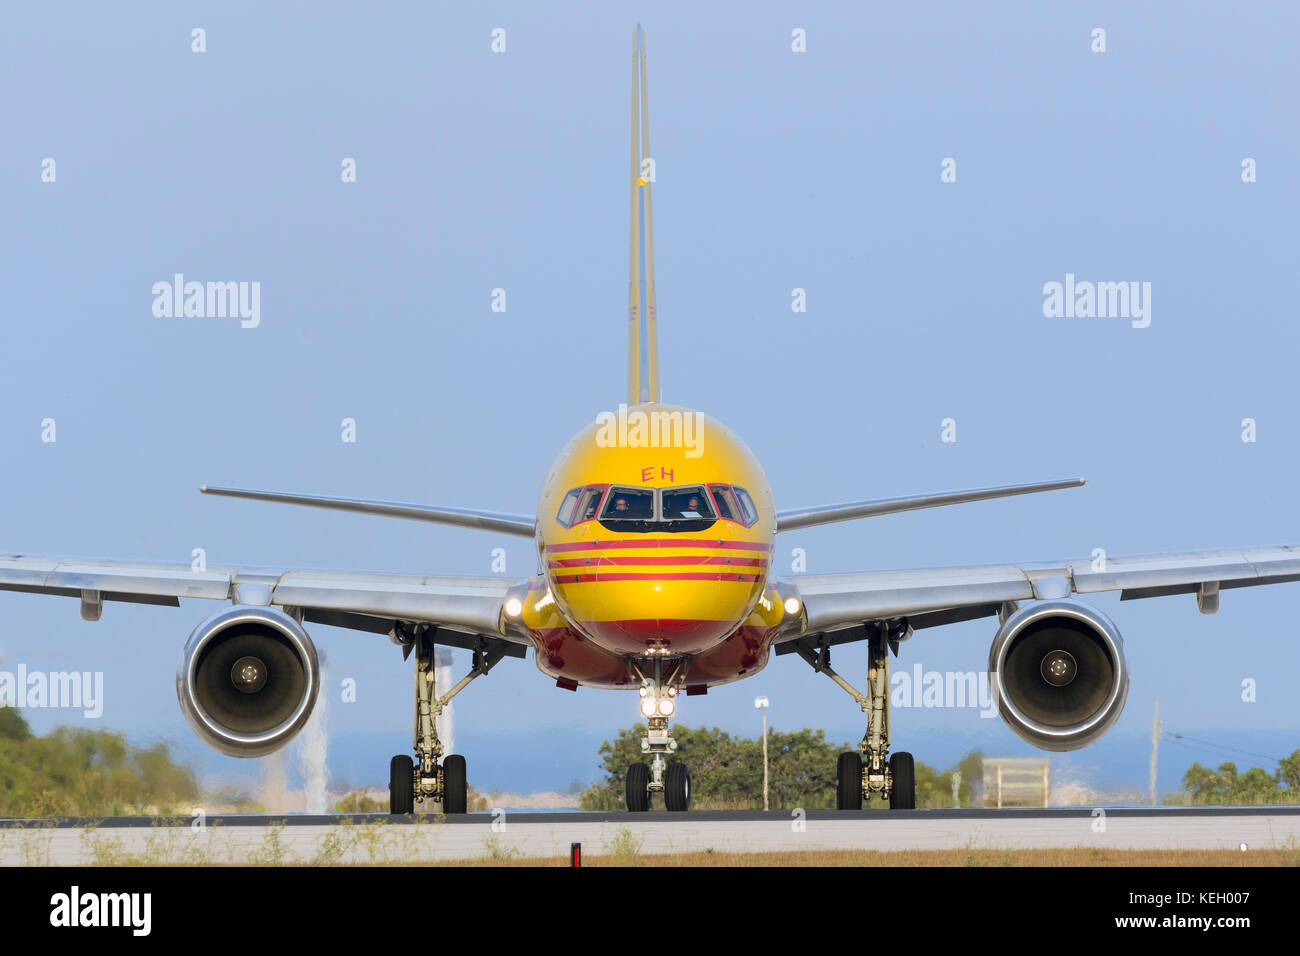 Dhl (trasporto aereo europeo - mangiare) Boeing 757-236(sf) [D-aleh] allineando la pista 31 per togliere la sera. Foto Stock